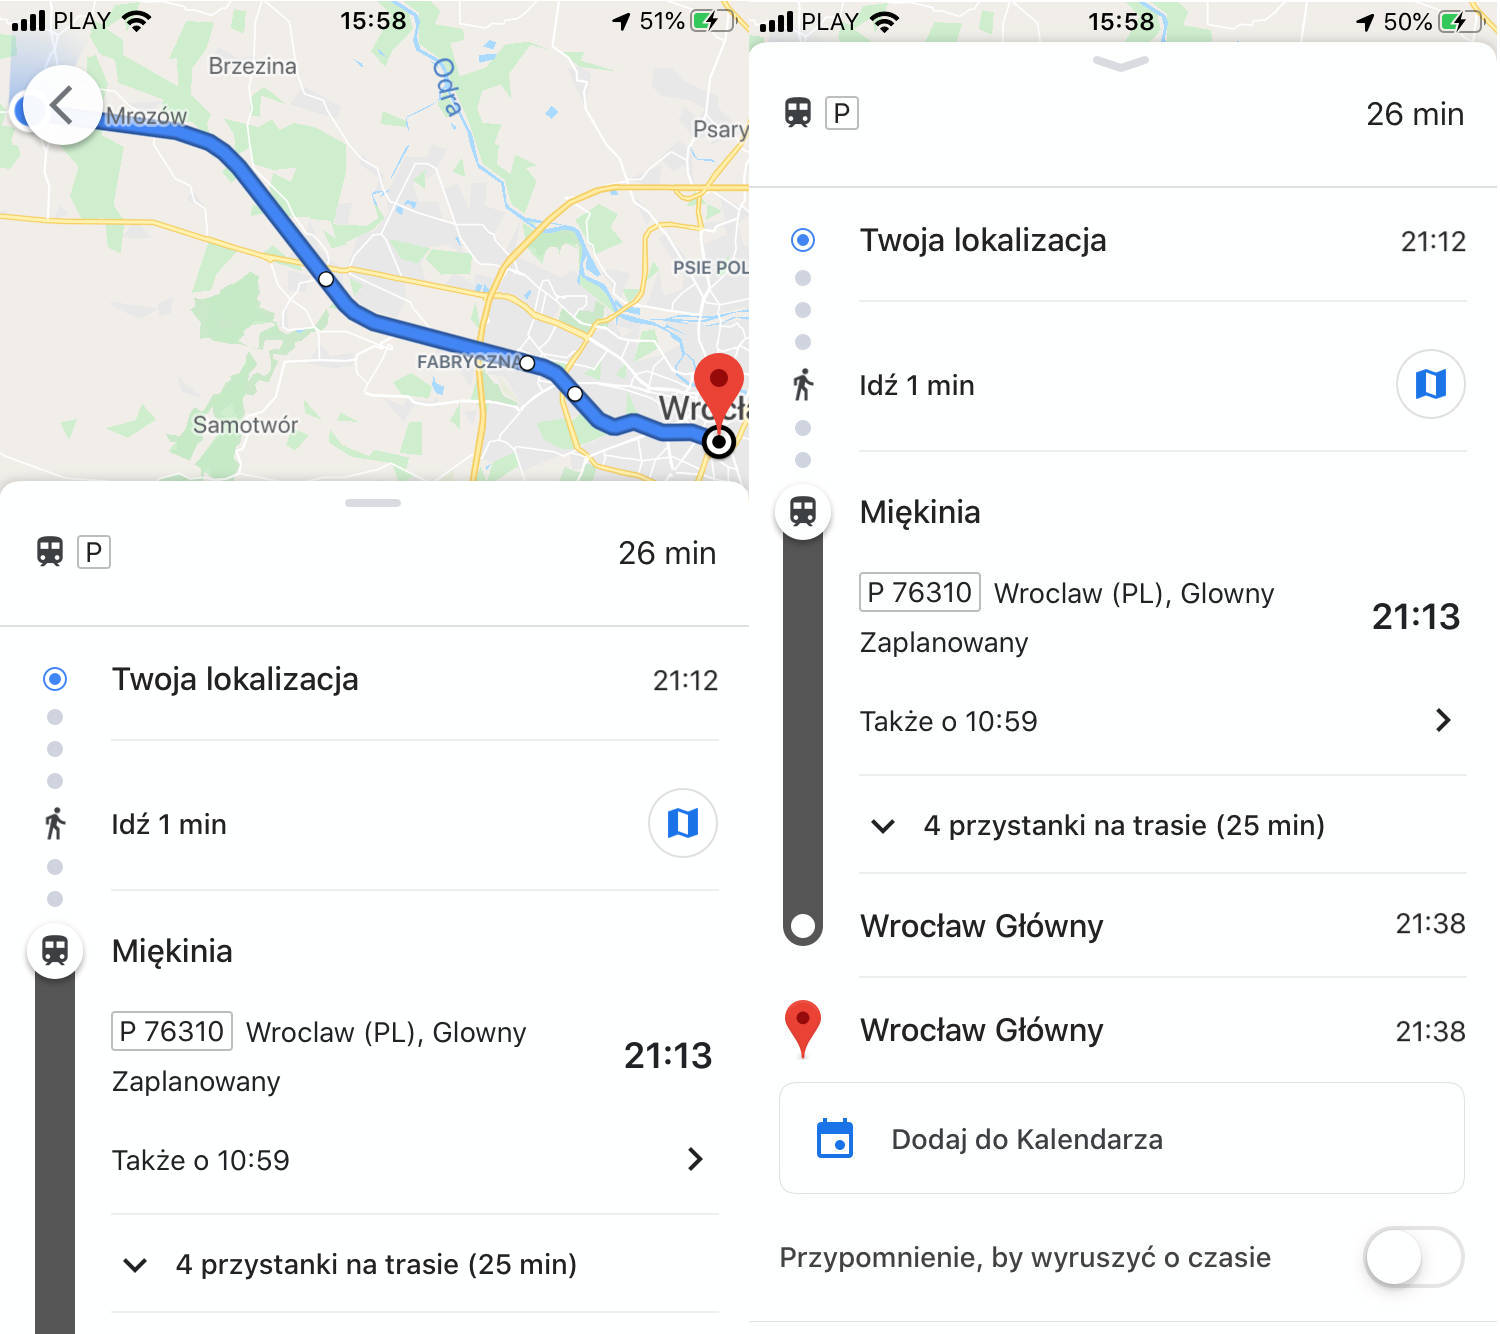 Mapy Google Maps przystaki linie ulubione środki transportu publicznego